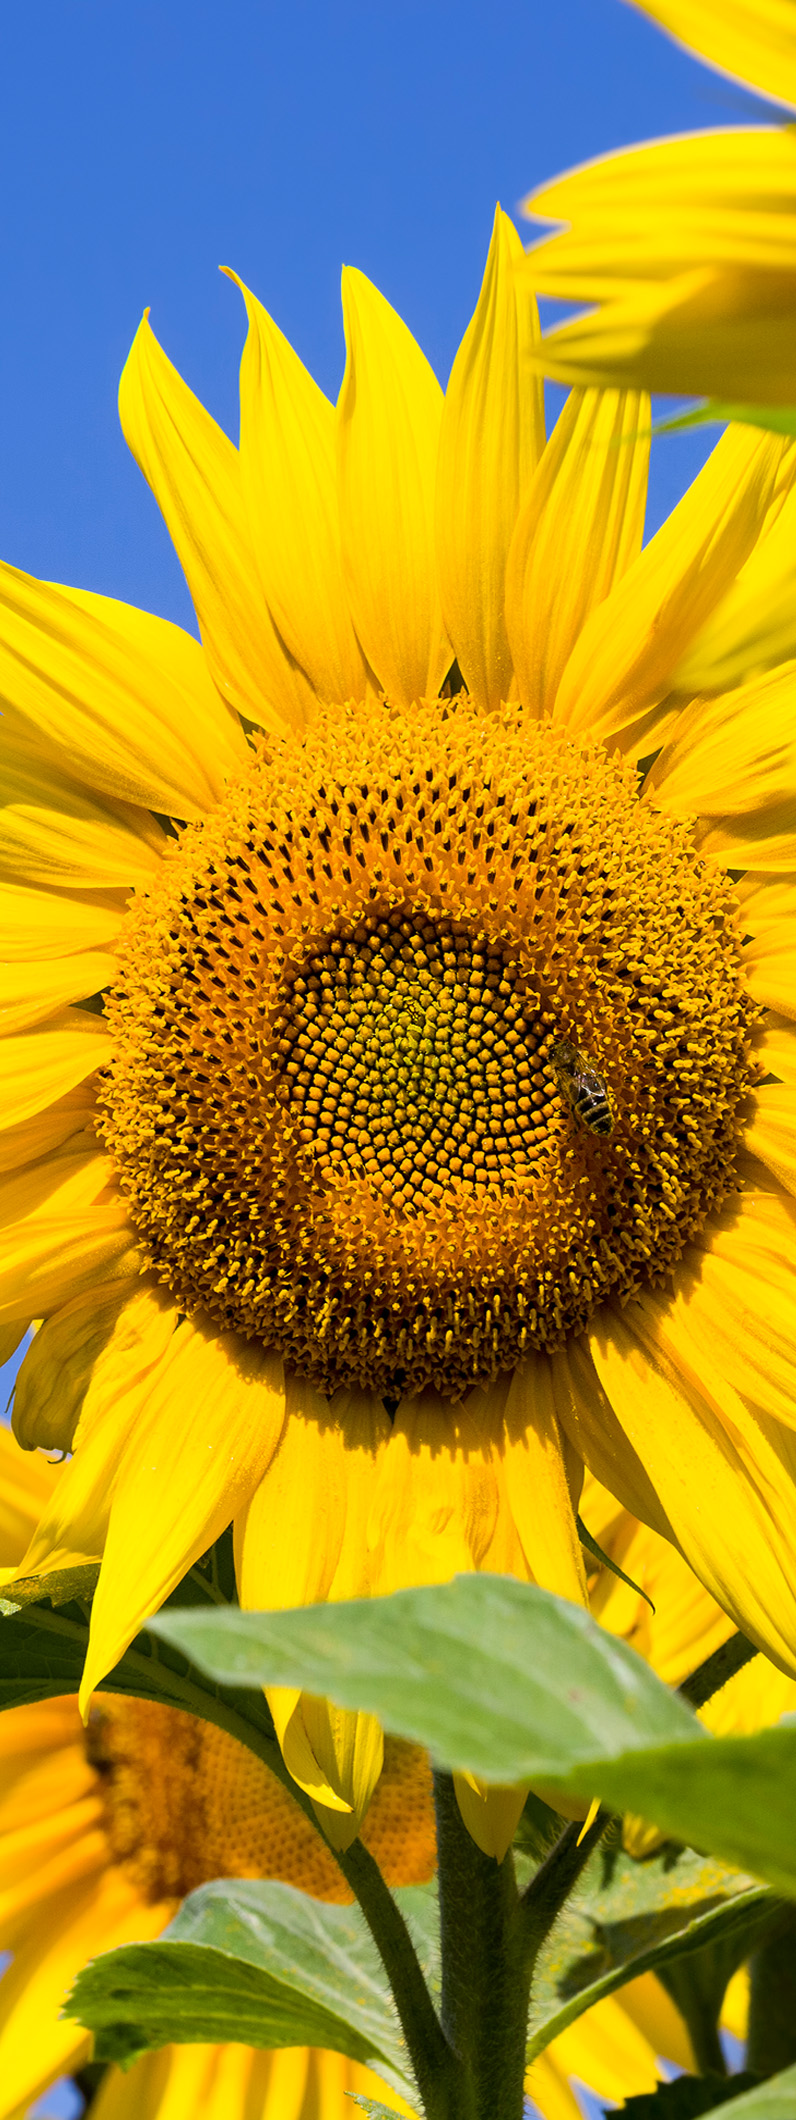 218-sunflower1.jpg